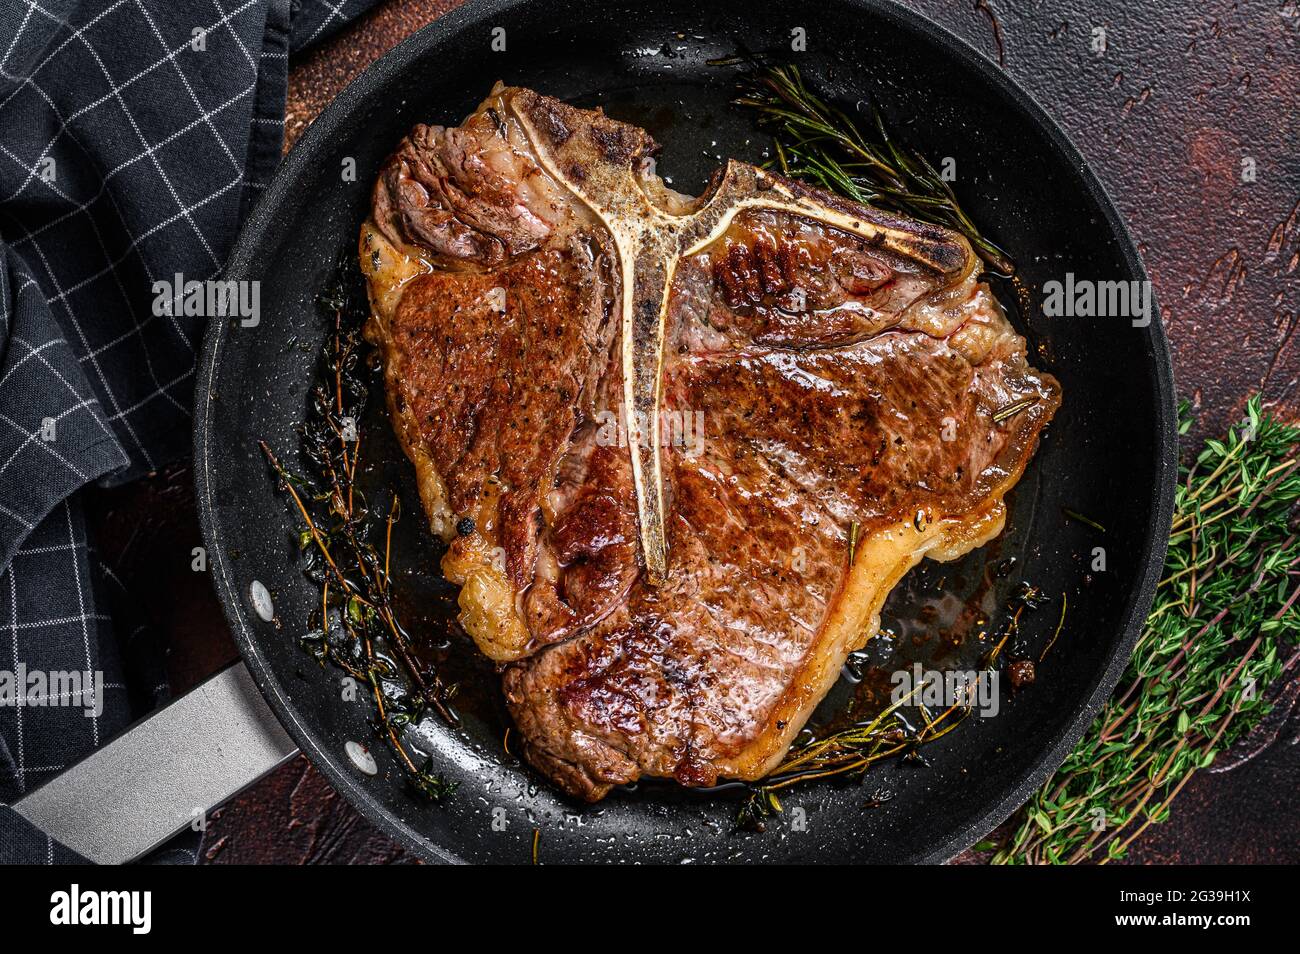 Gegrilltes Porterhouse-Rinderfleisch Steak mit Kräutern in einer Pfanne.  Dunkler Hintergrund. Draufsicht Stockfotografie - Alamy